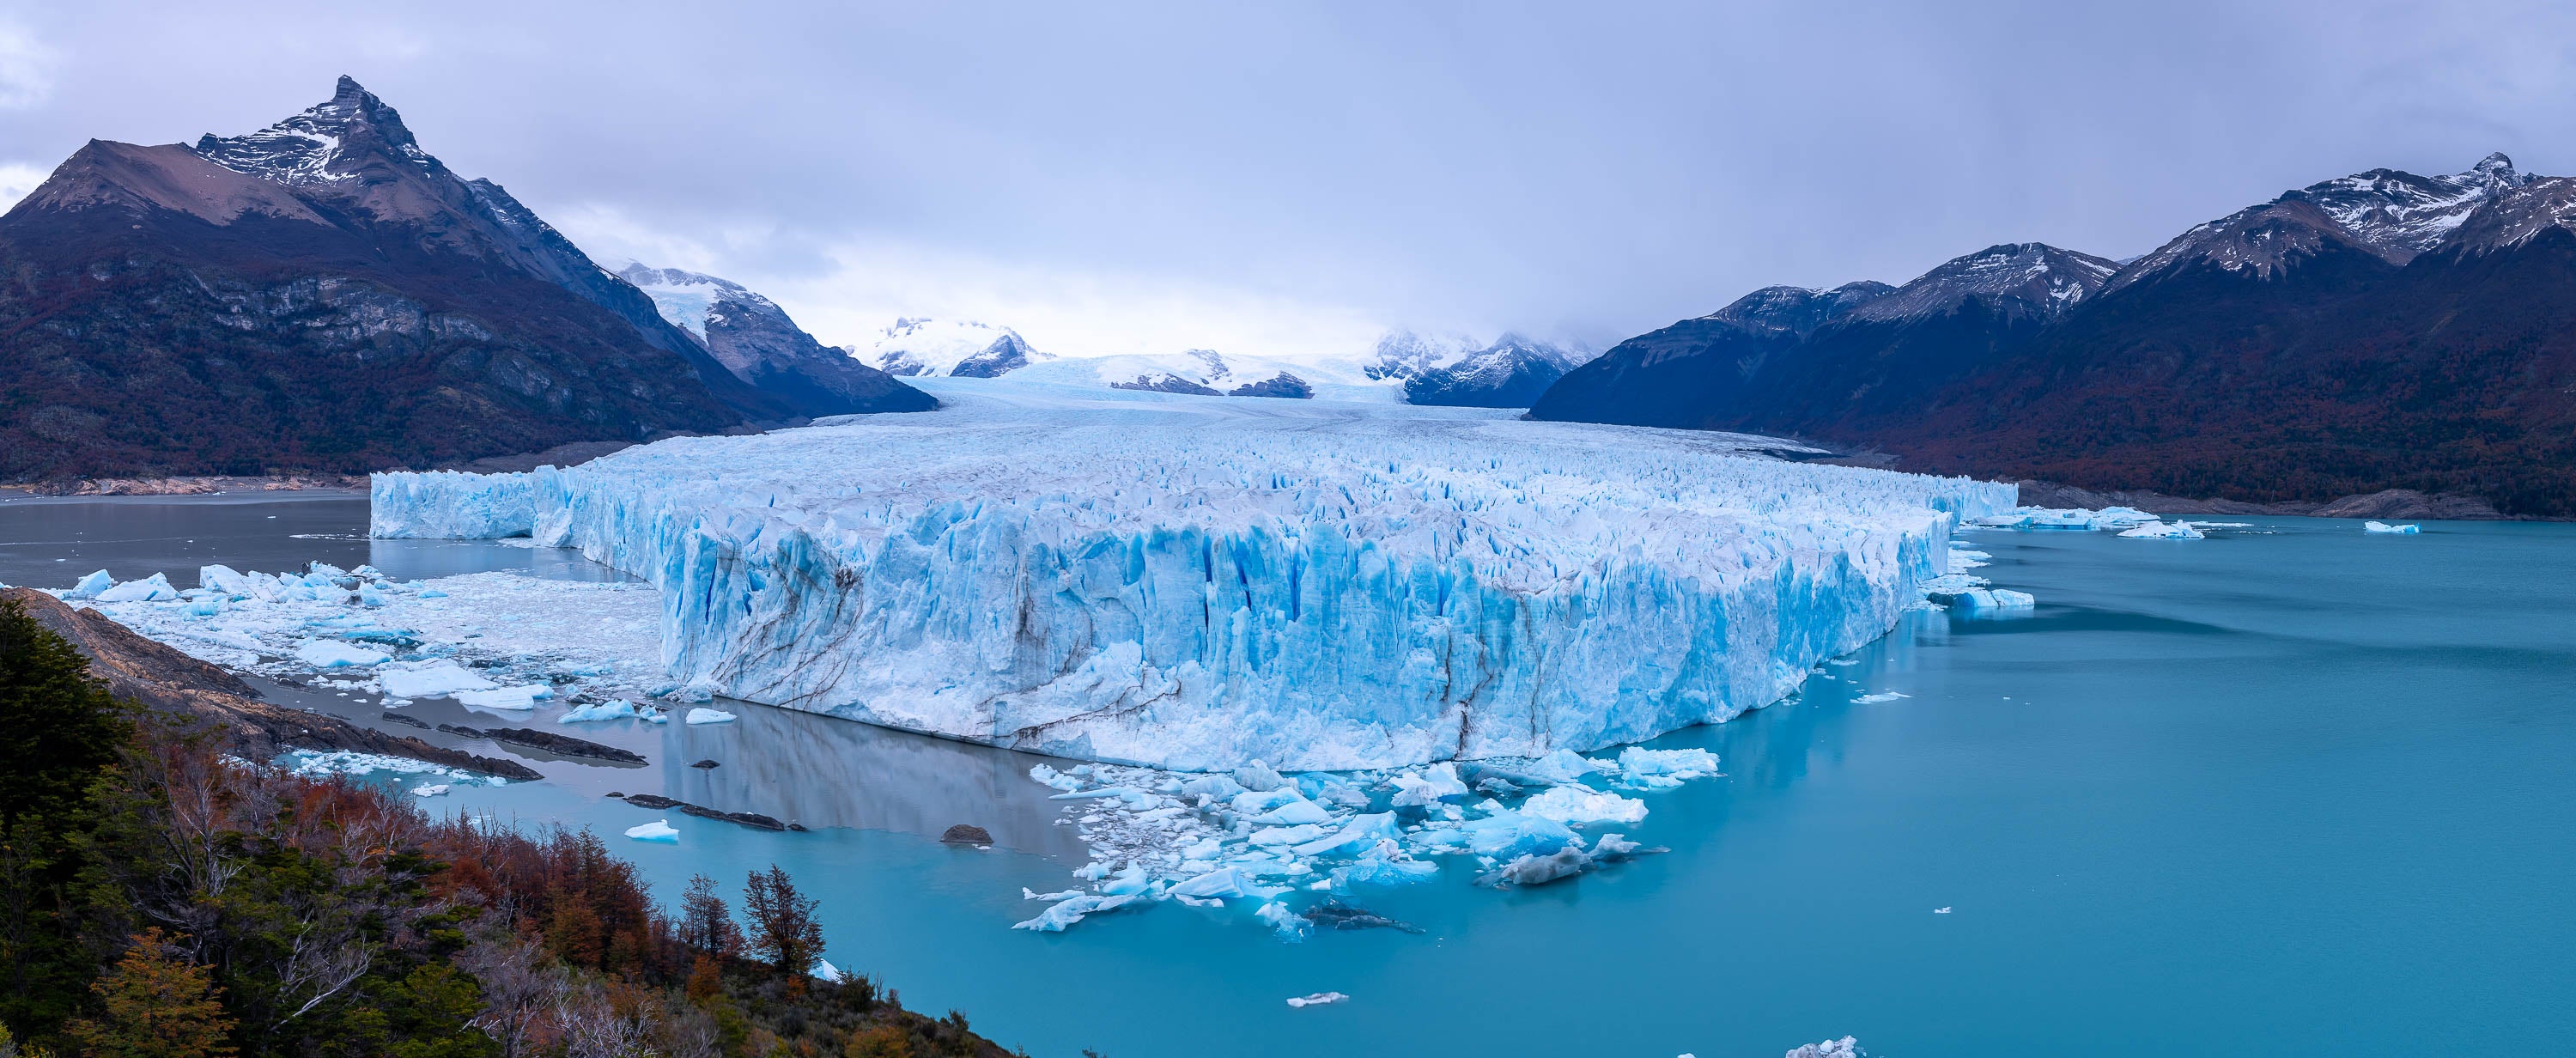 Perito Moreno Glacier panorama, Argentina